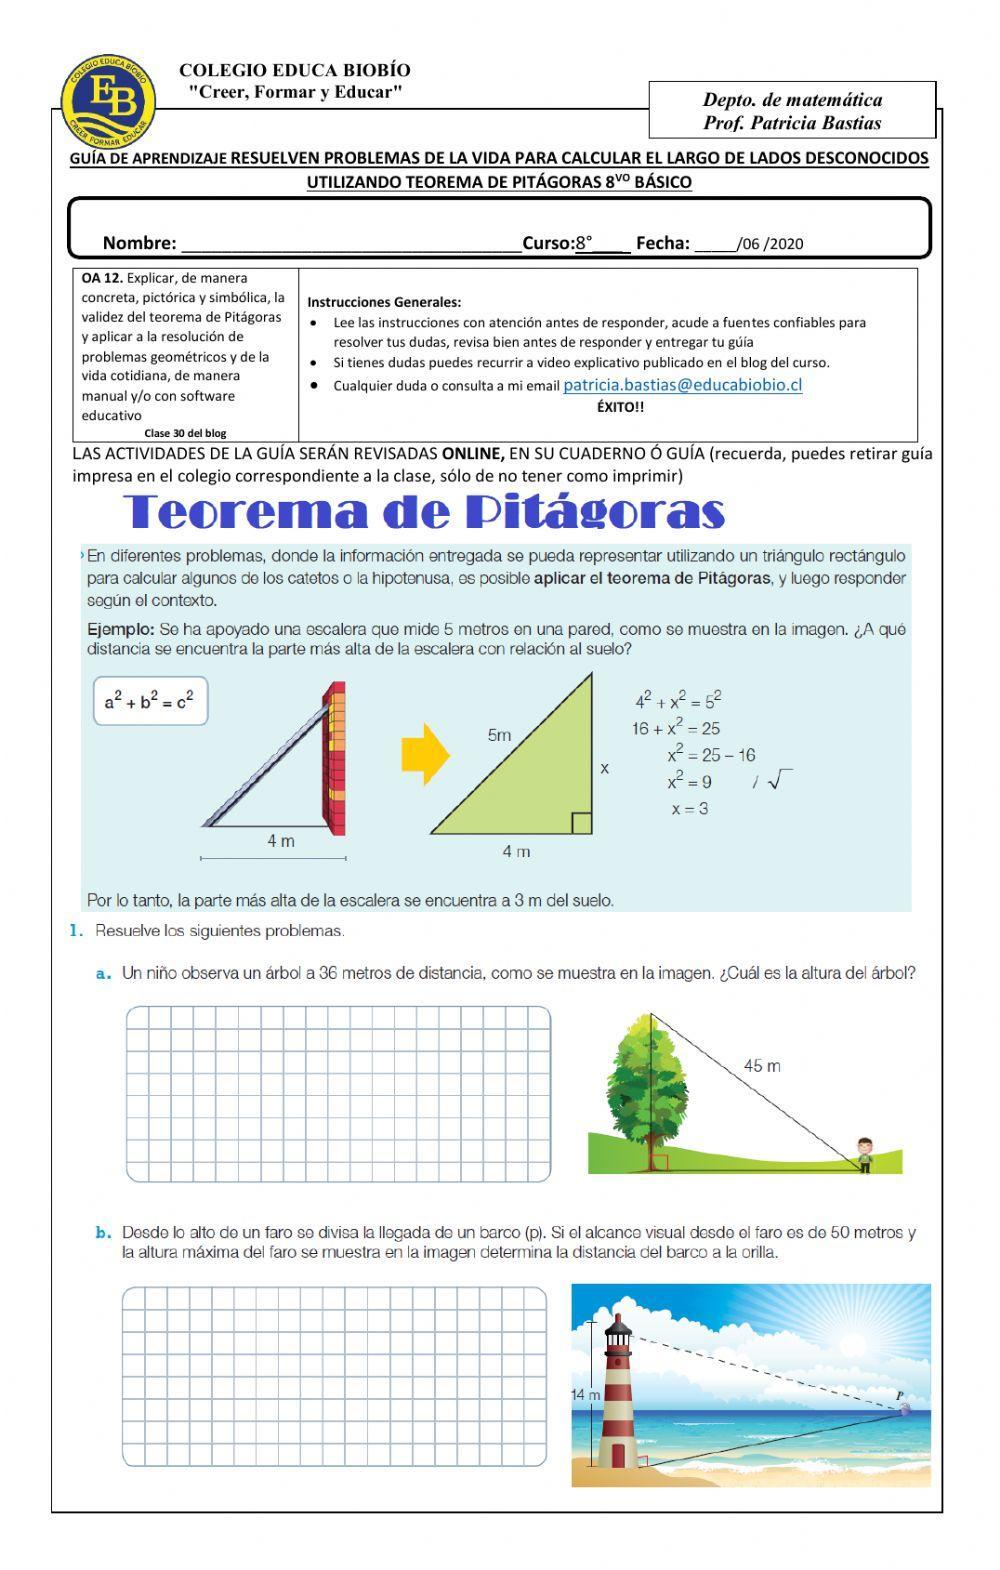 CLASE 30 Resolver problemas de la vida para calcular el largo de lados desconocidos utilizando teorema de Pitágoras